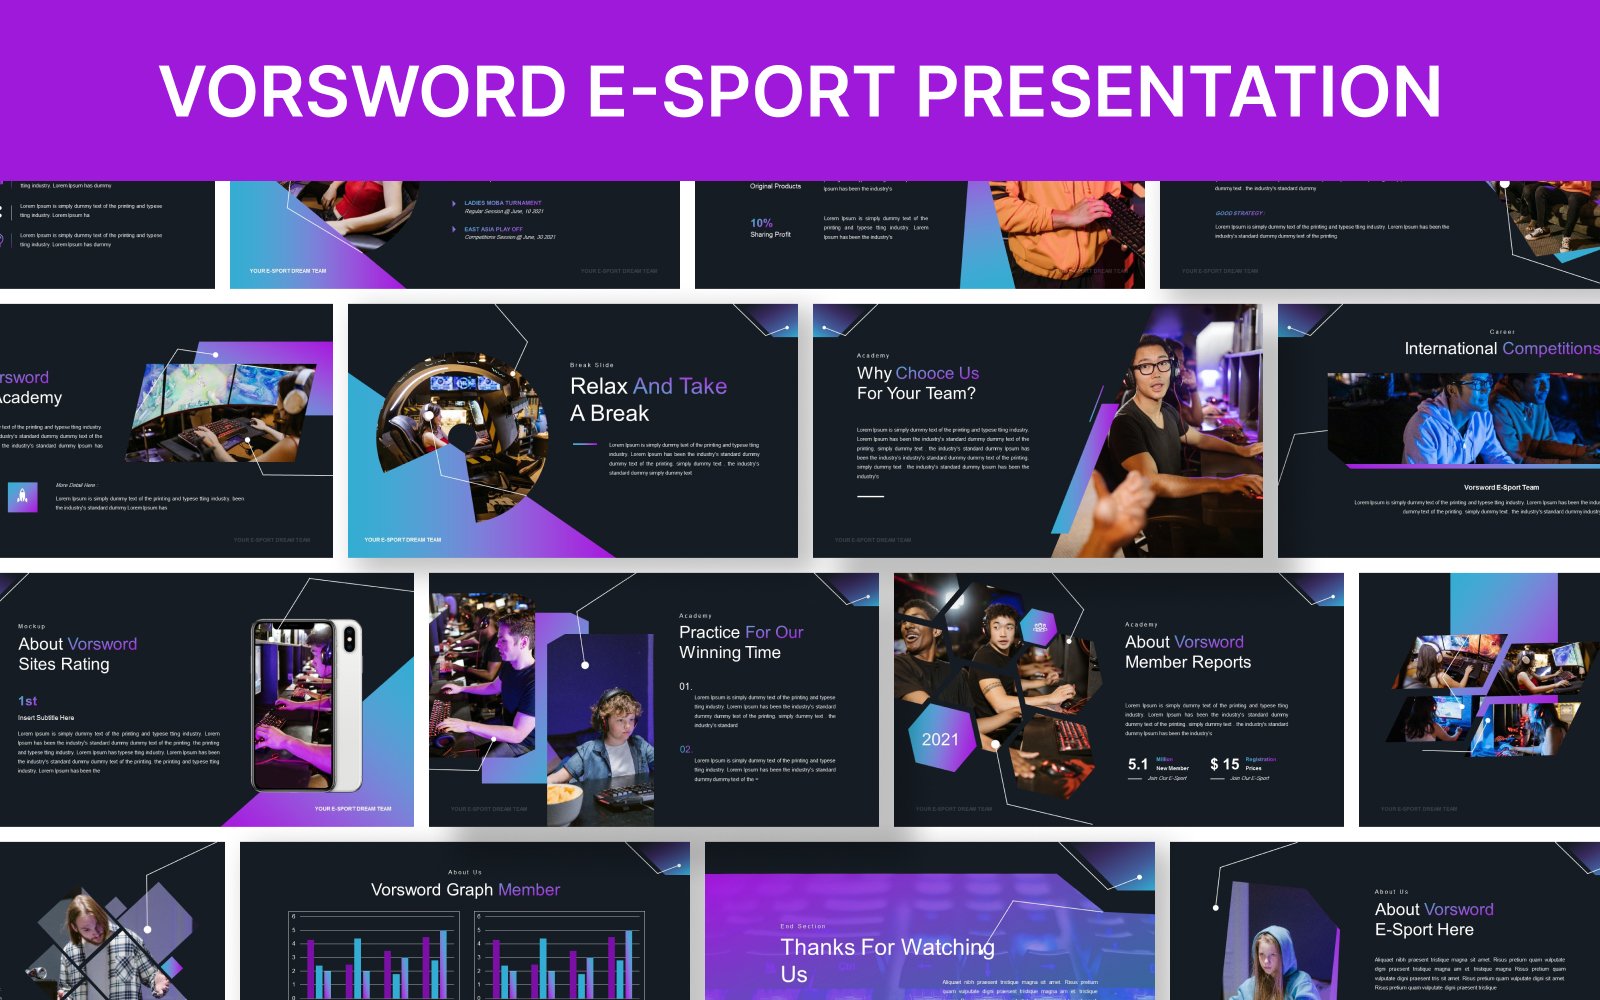 Vorsword Esport Google Slide Presentation